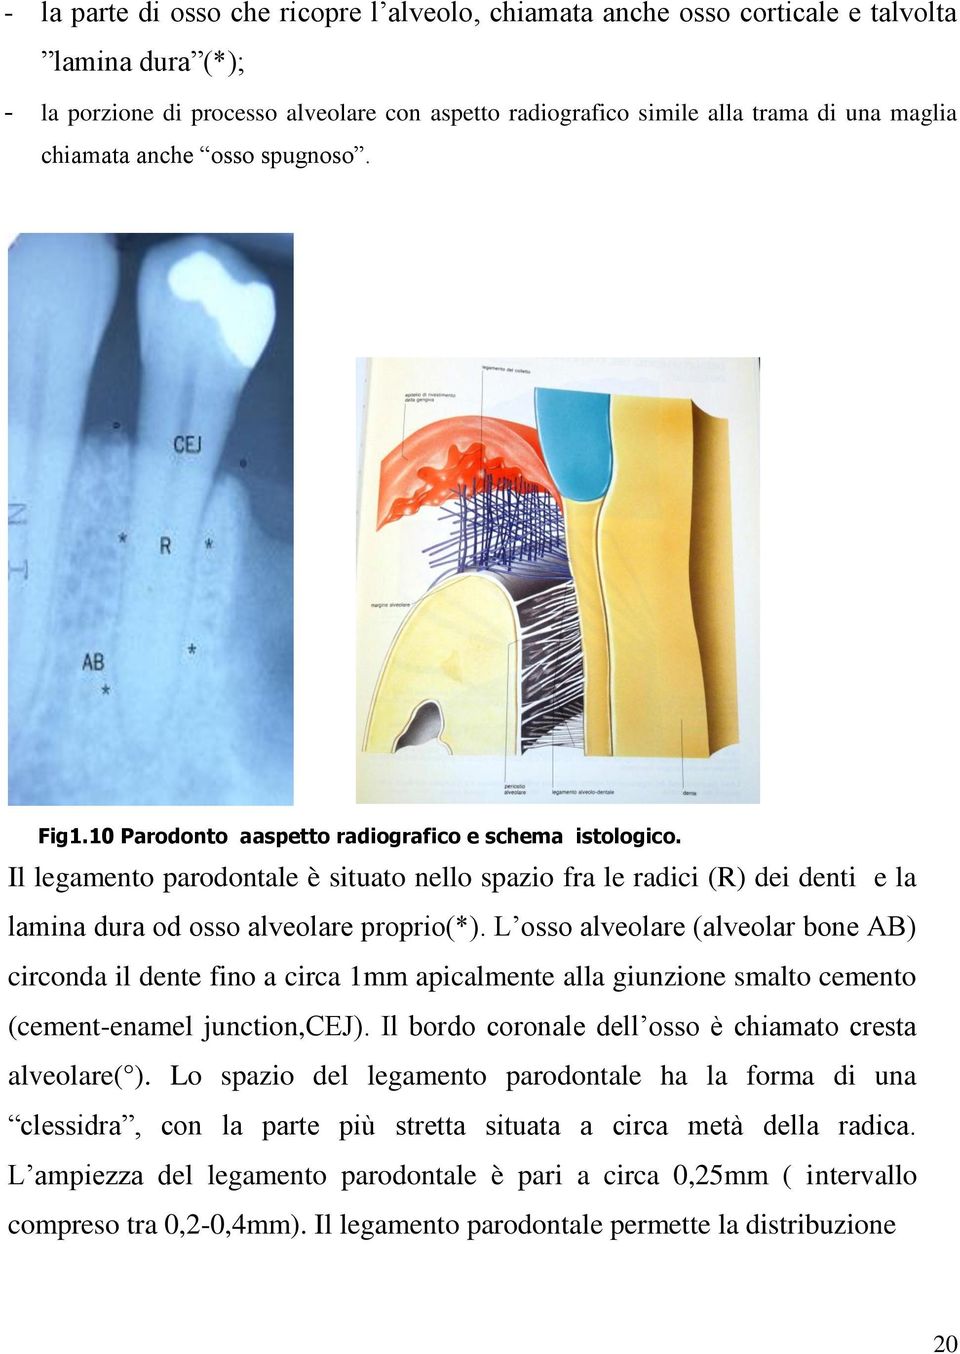 Il legamento parodontale è situato nello spazio fra le radici (R) dei denti e la lamina dura od osso alveolare proprio(*).